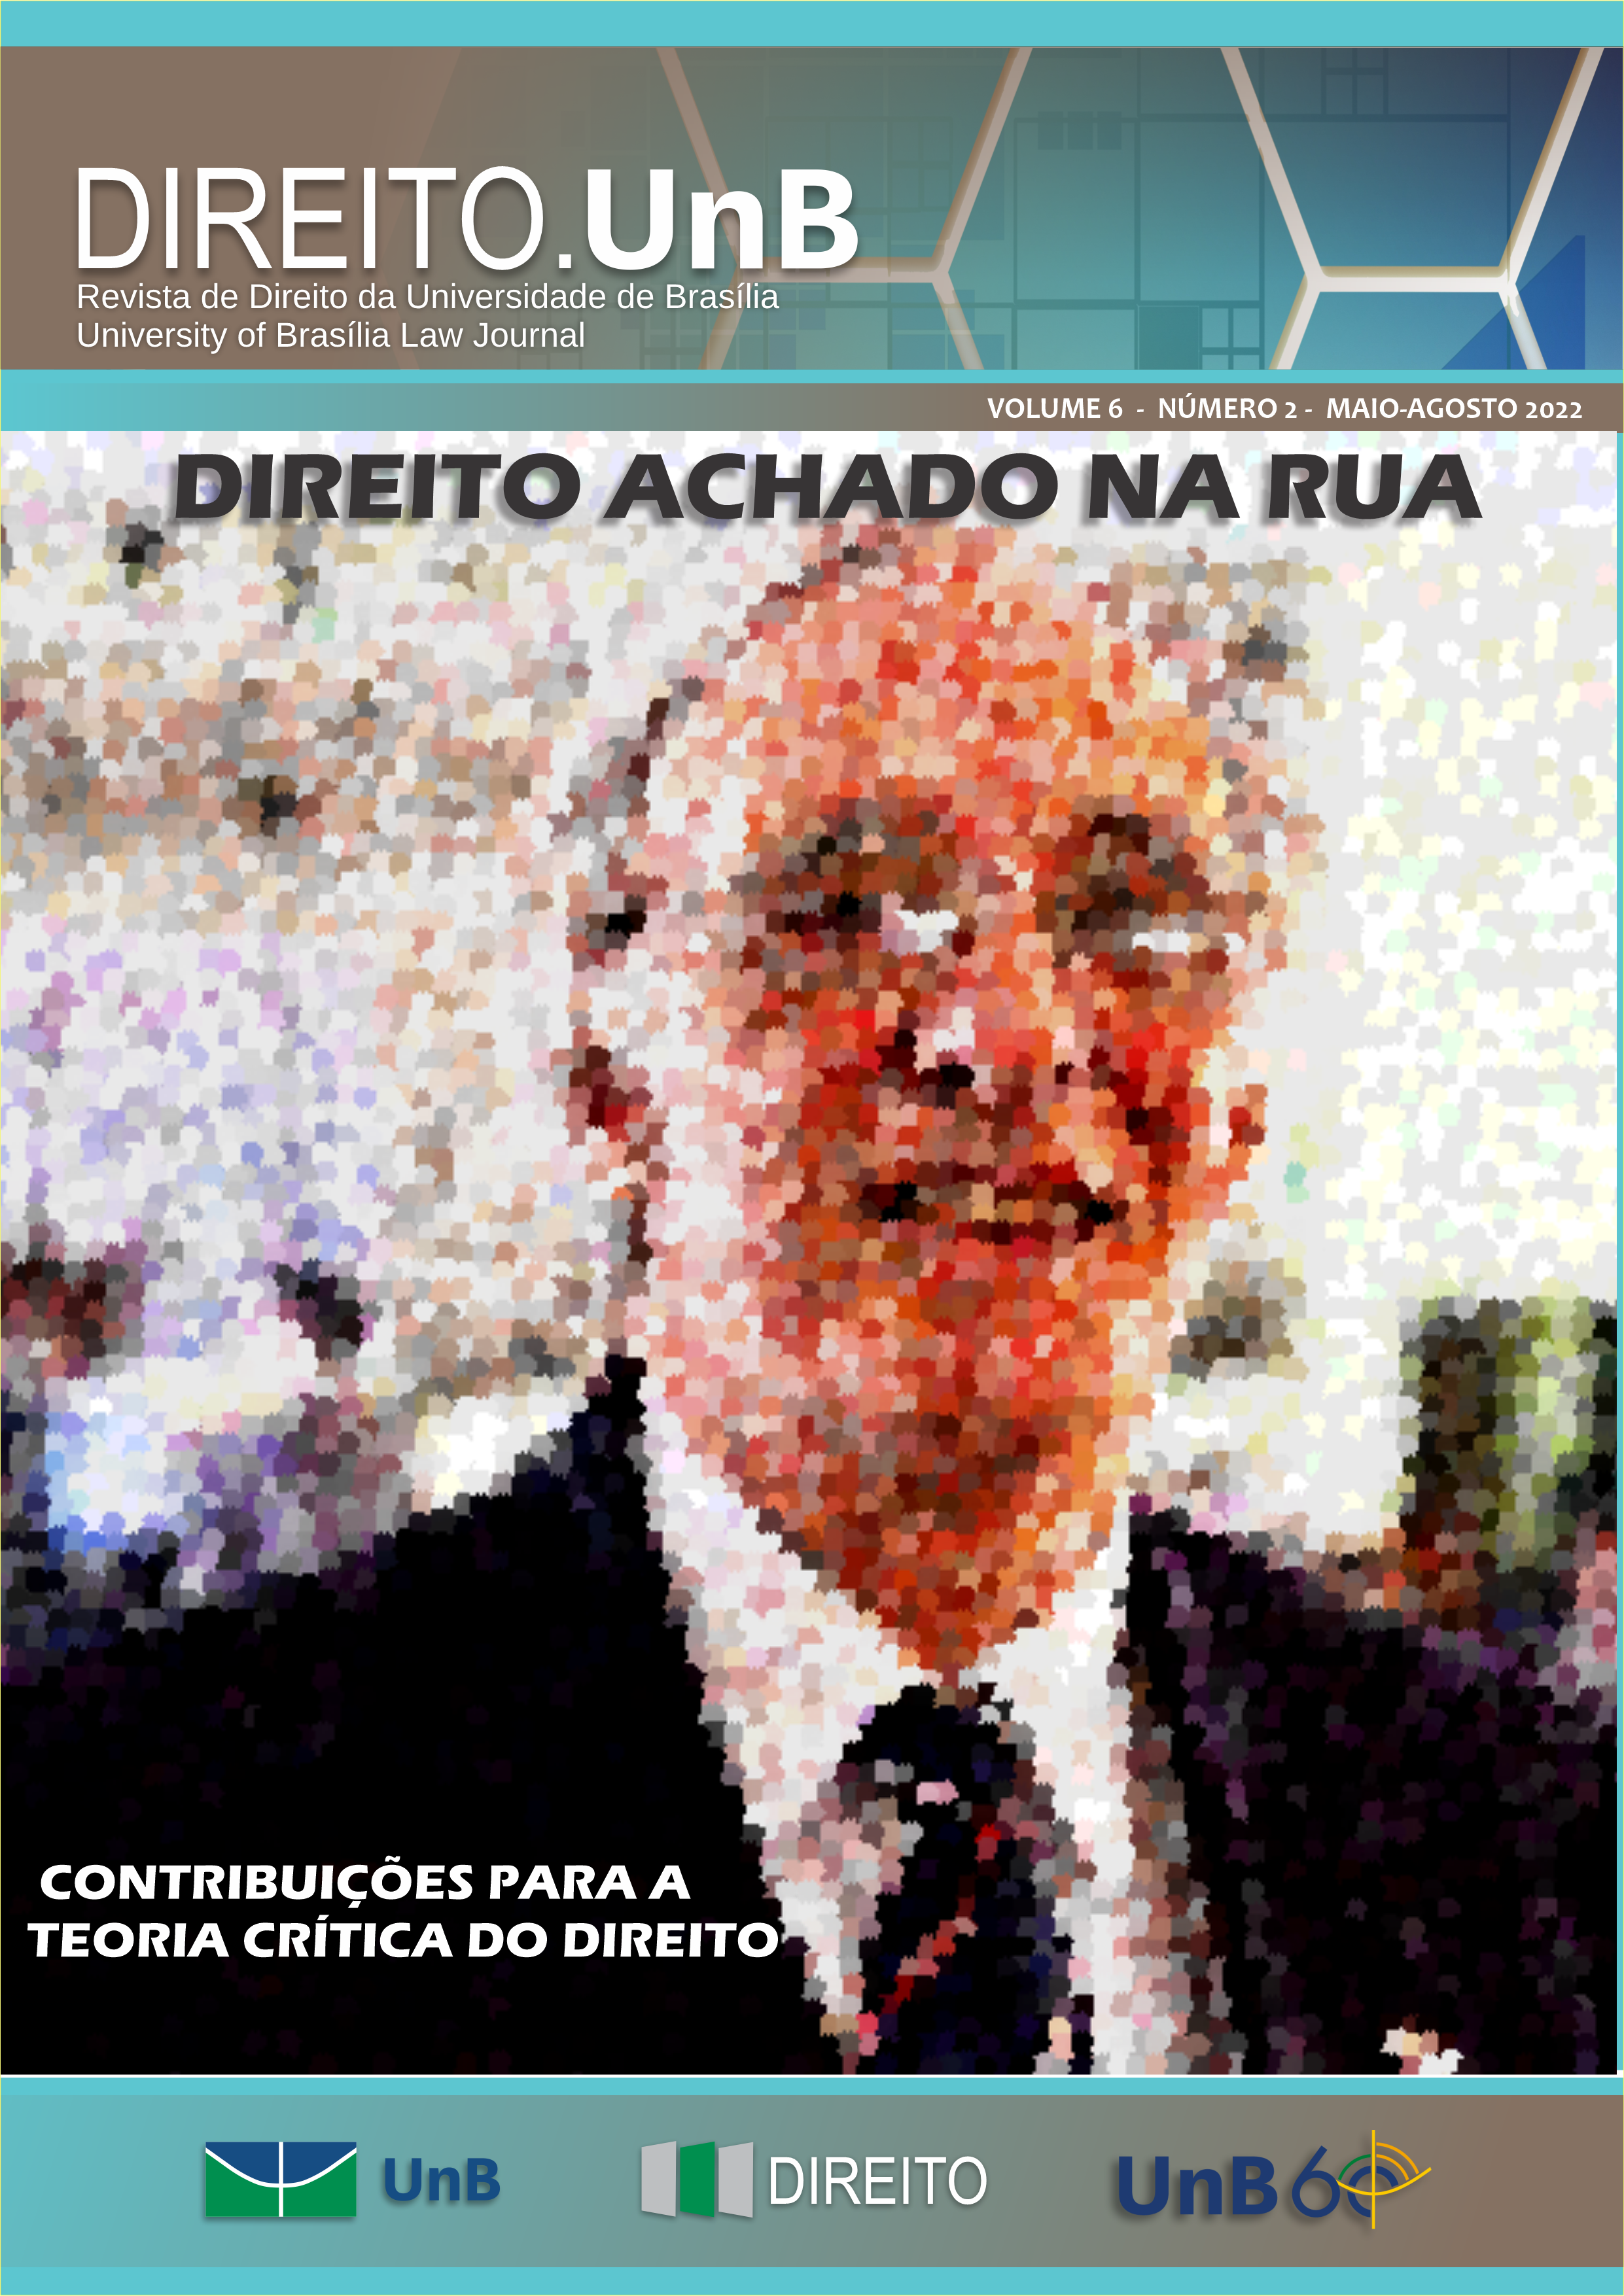 Revista Direito.UnB |Maio - Agosto, 2022, V. 06, N. 2